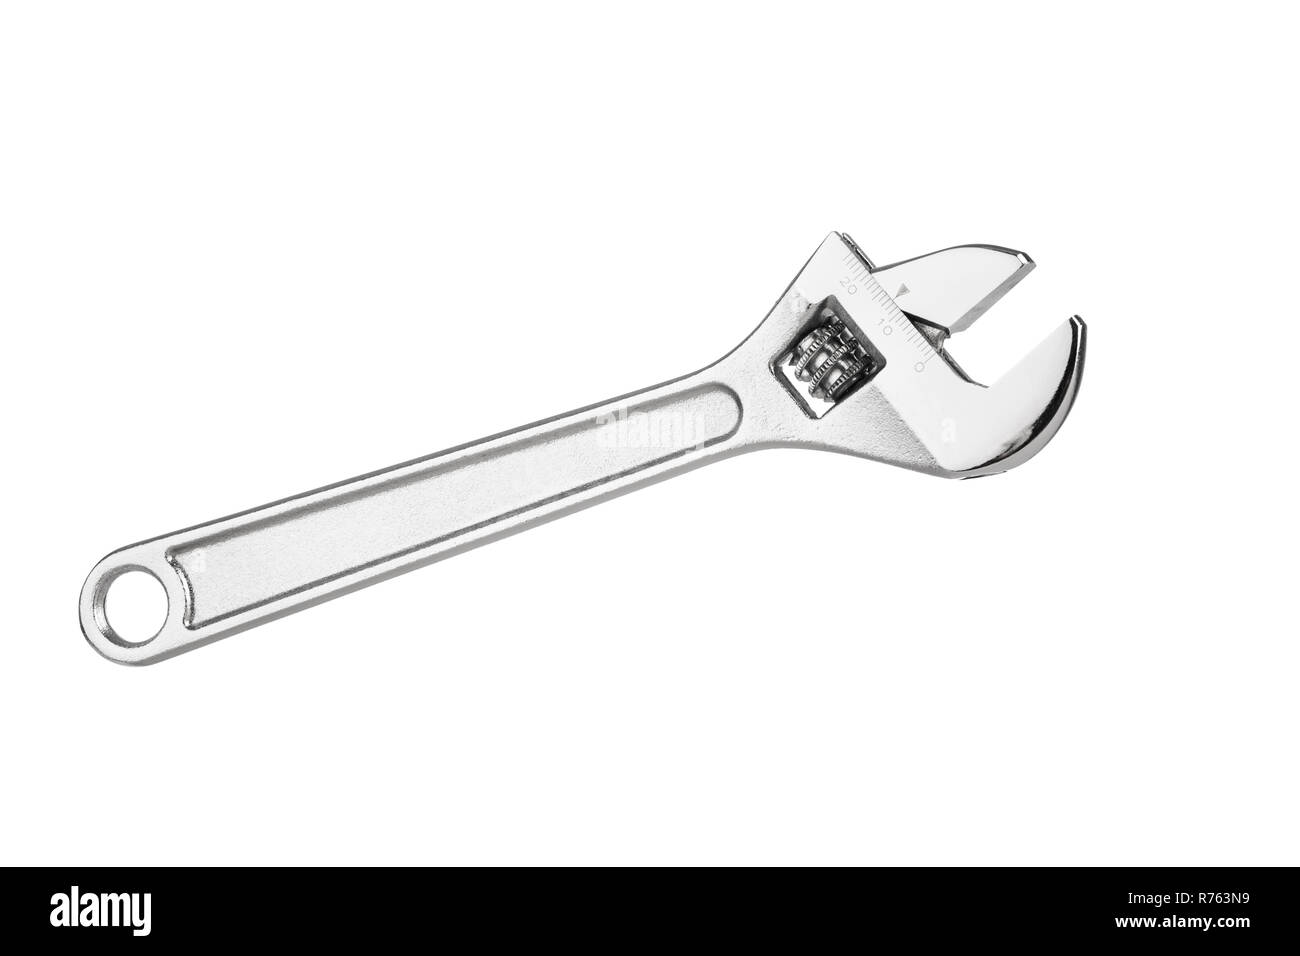 Ein verstellbarer Schraubenschlüssel Werkzeug auf weißem Hintergrund Stockfoto